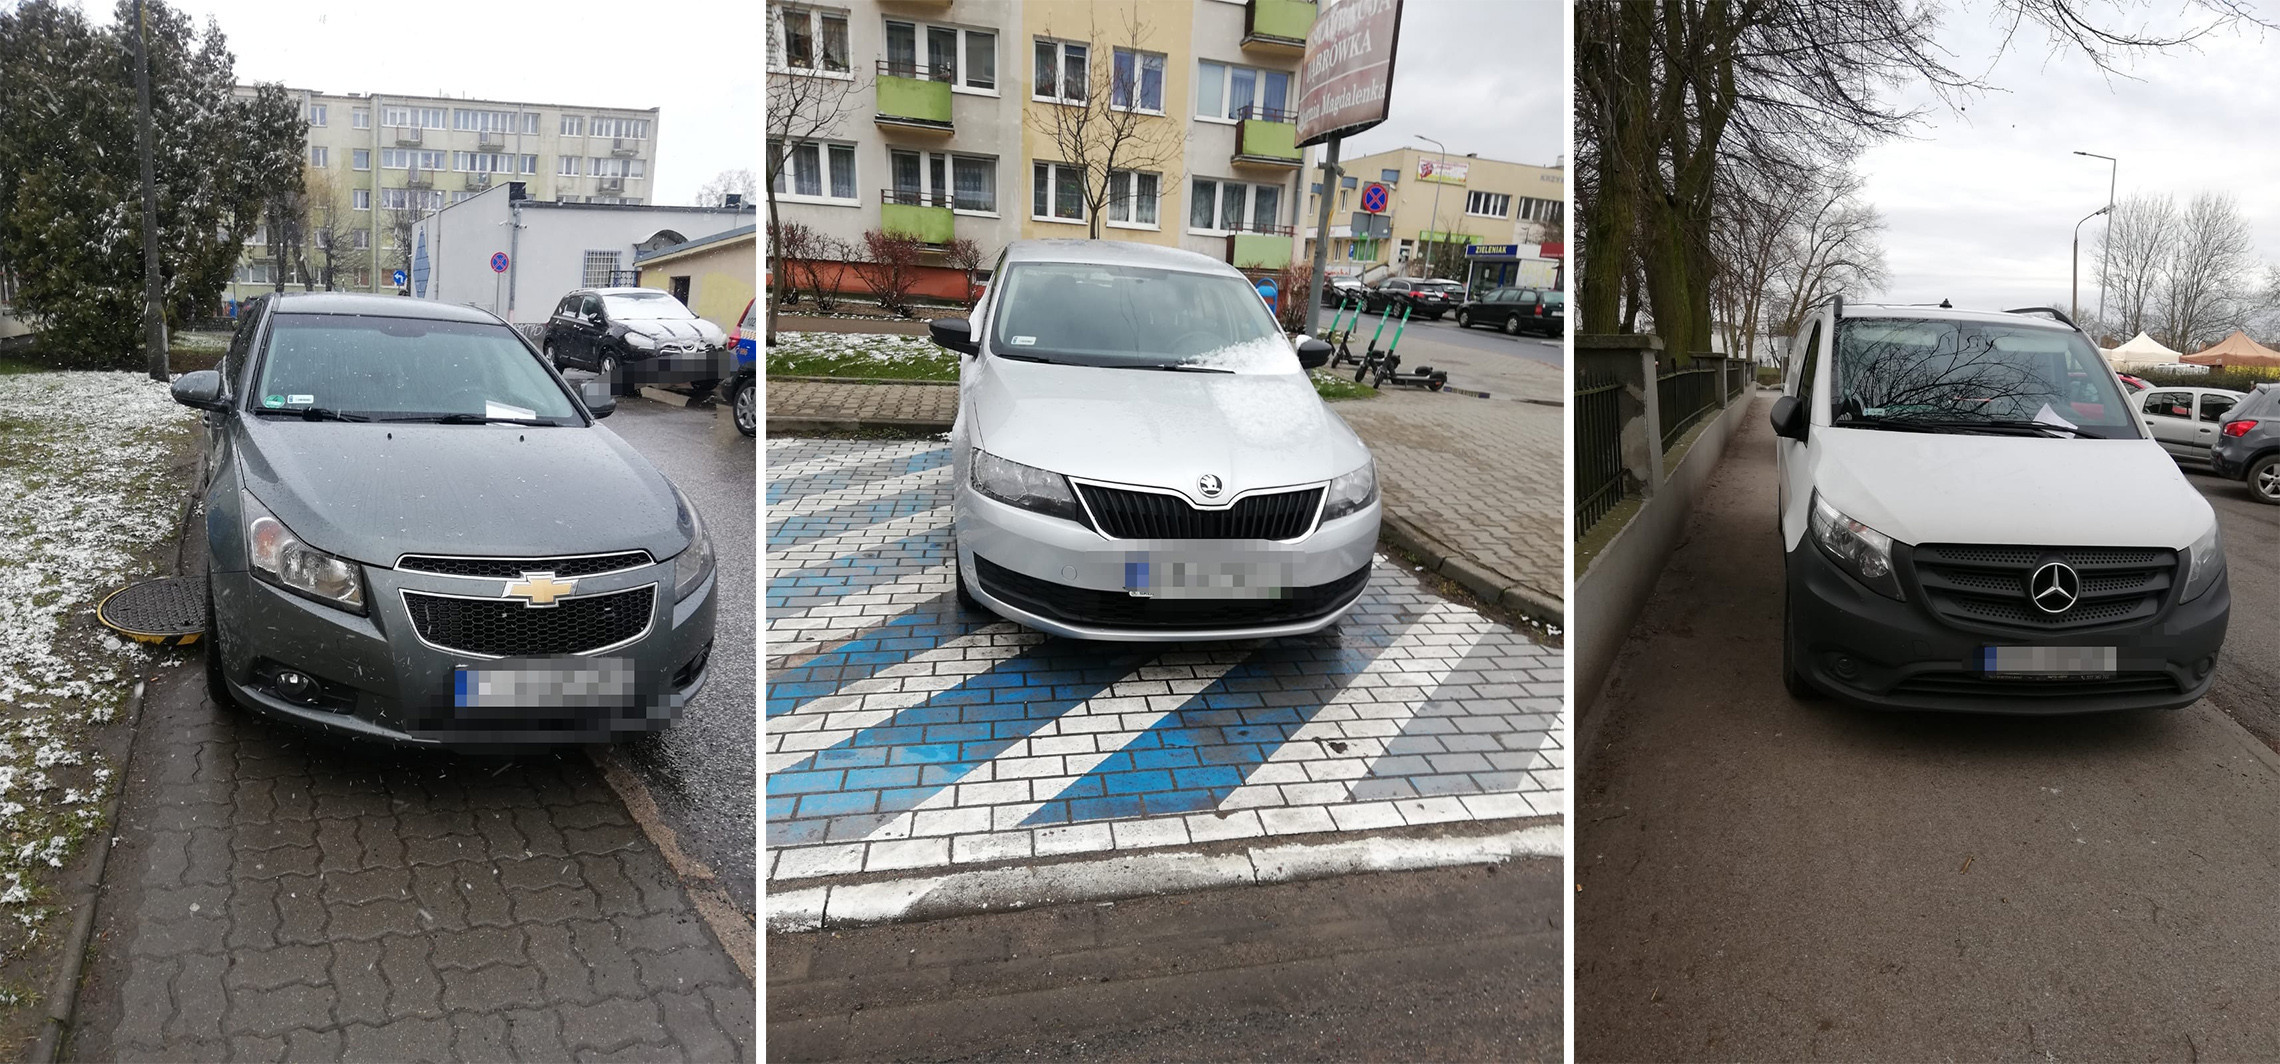 Inowrocław - Tak parkować nie wolno. Straż miejska publikuje zdjęcia 